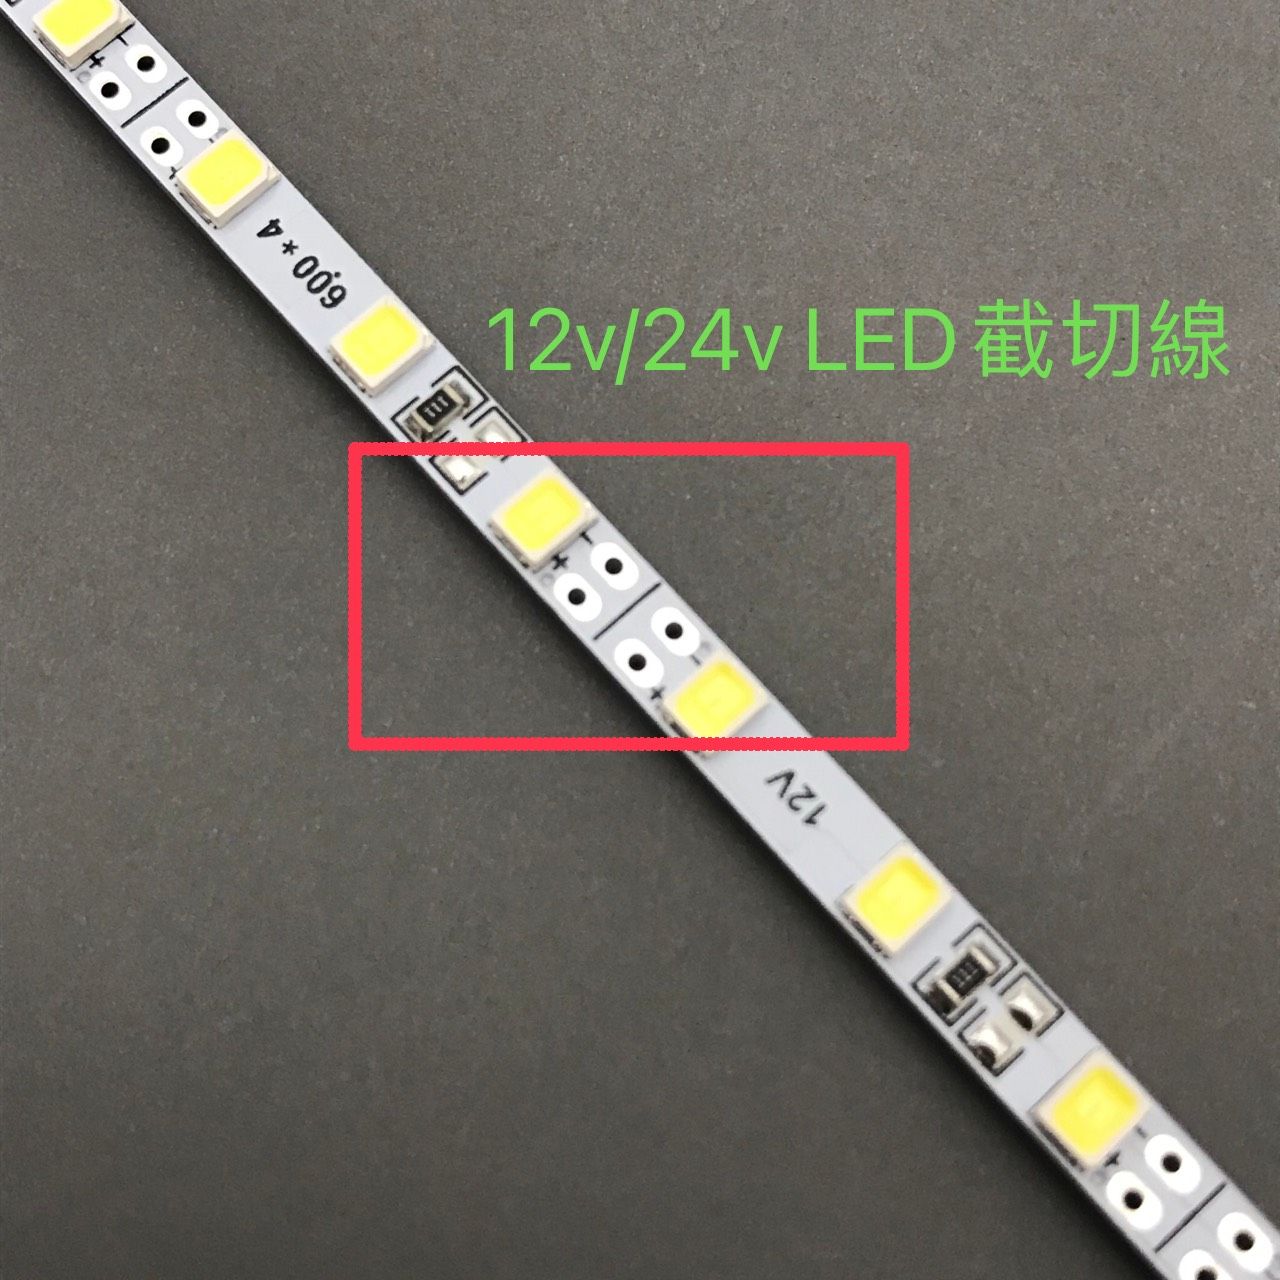 LED Non-Touch-Schalter für LED-Streifen 12V 24V oder LED-Beleuchtung